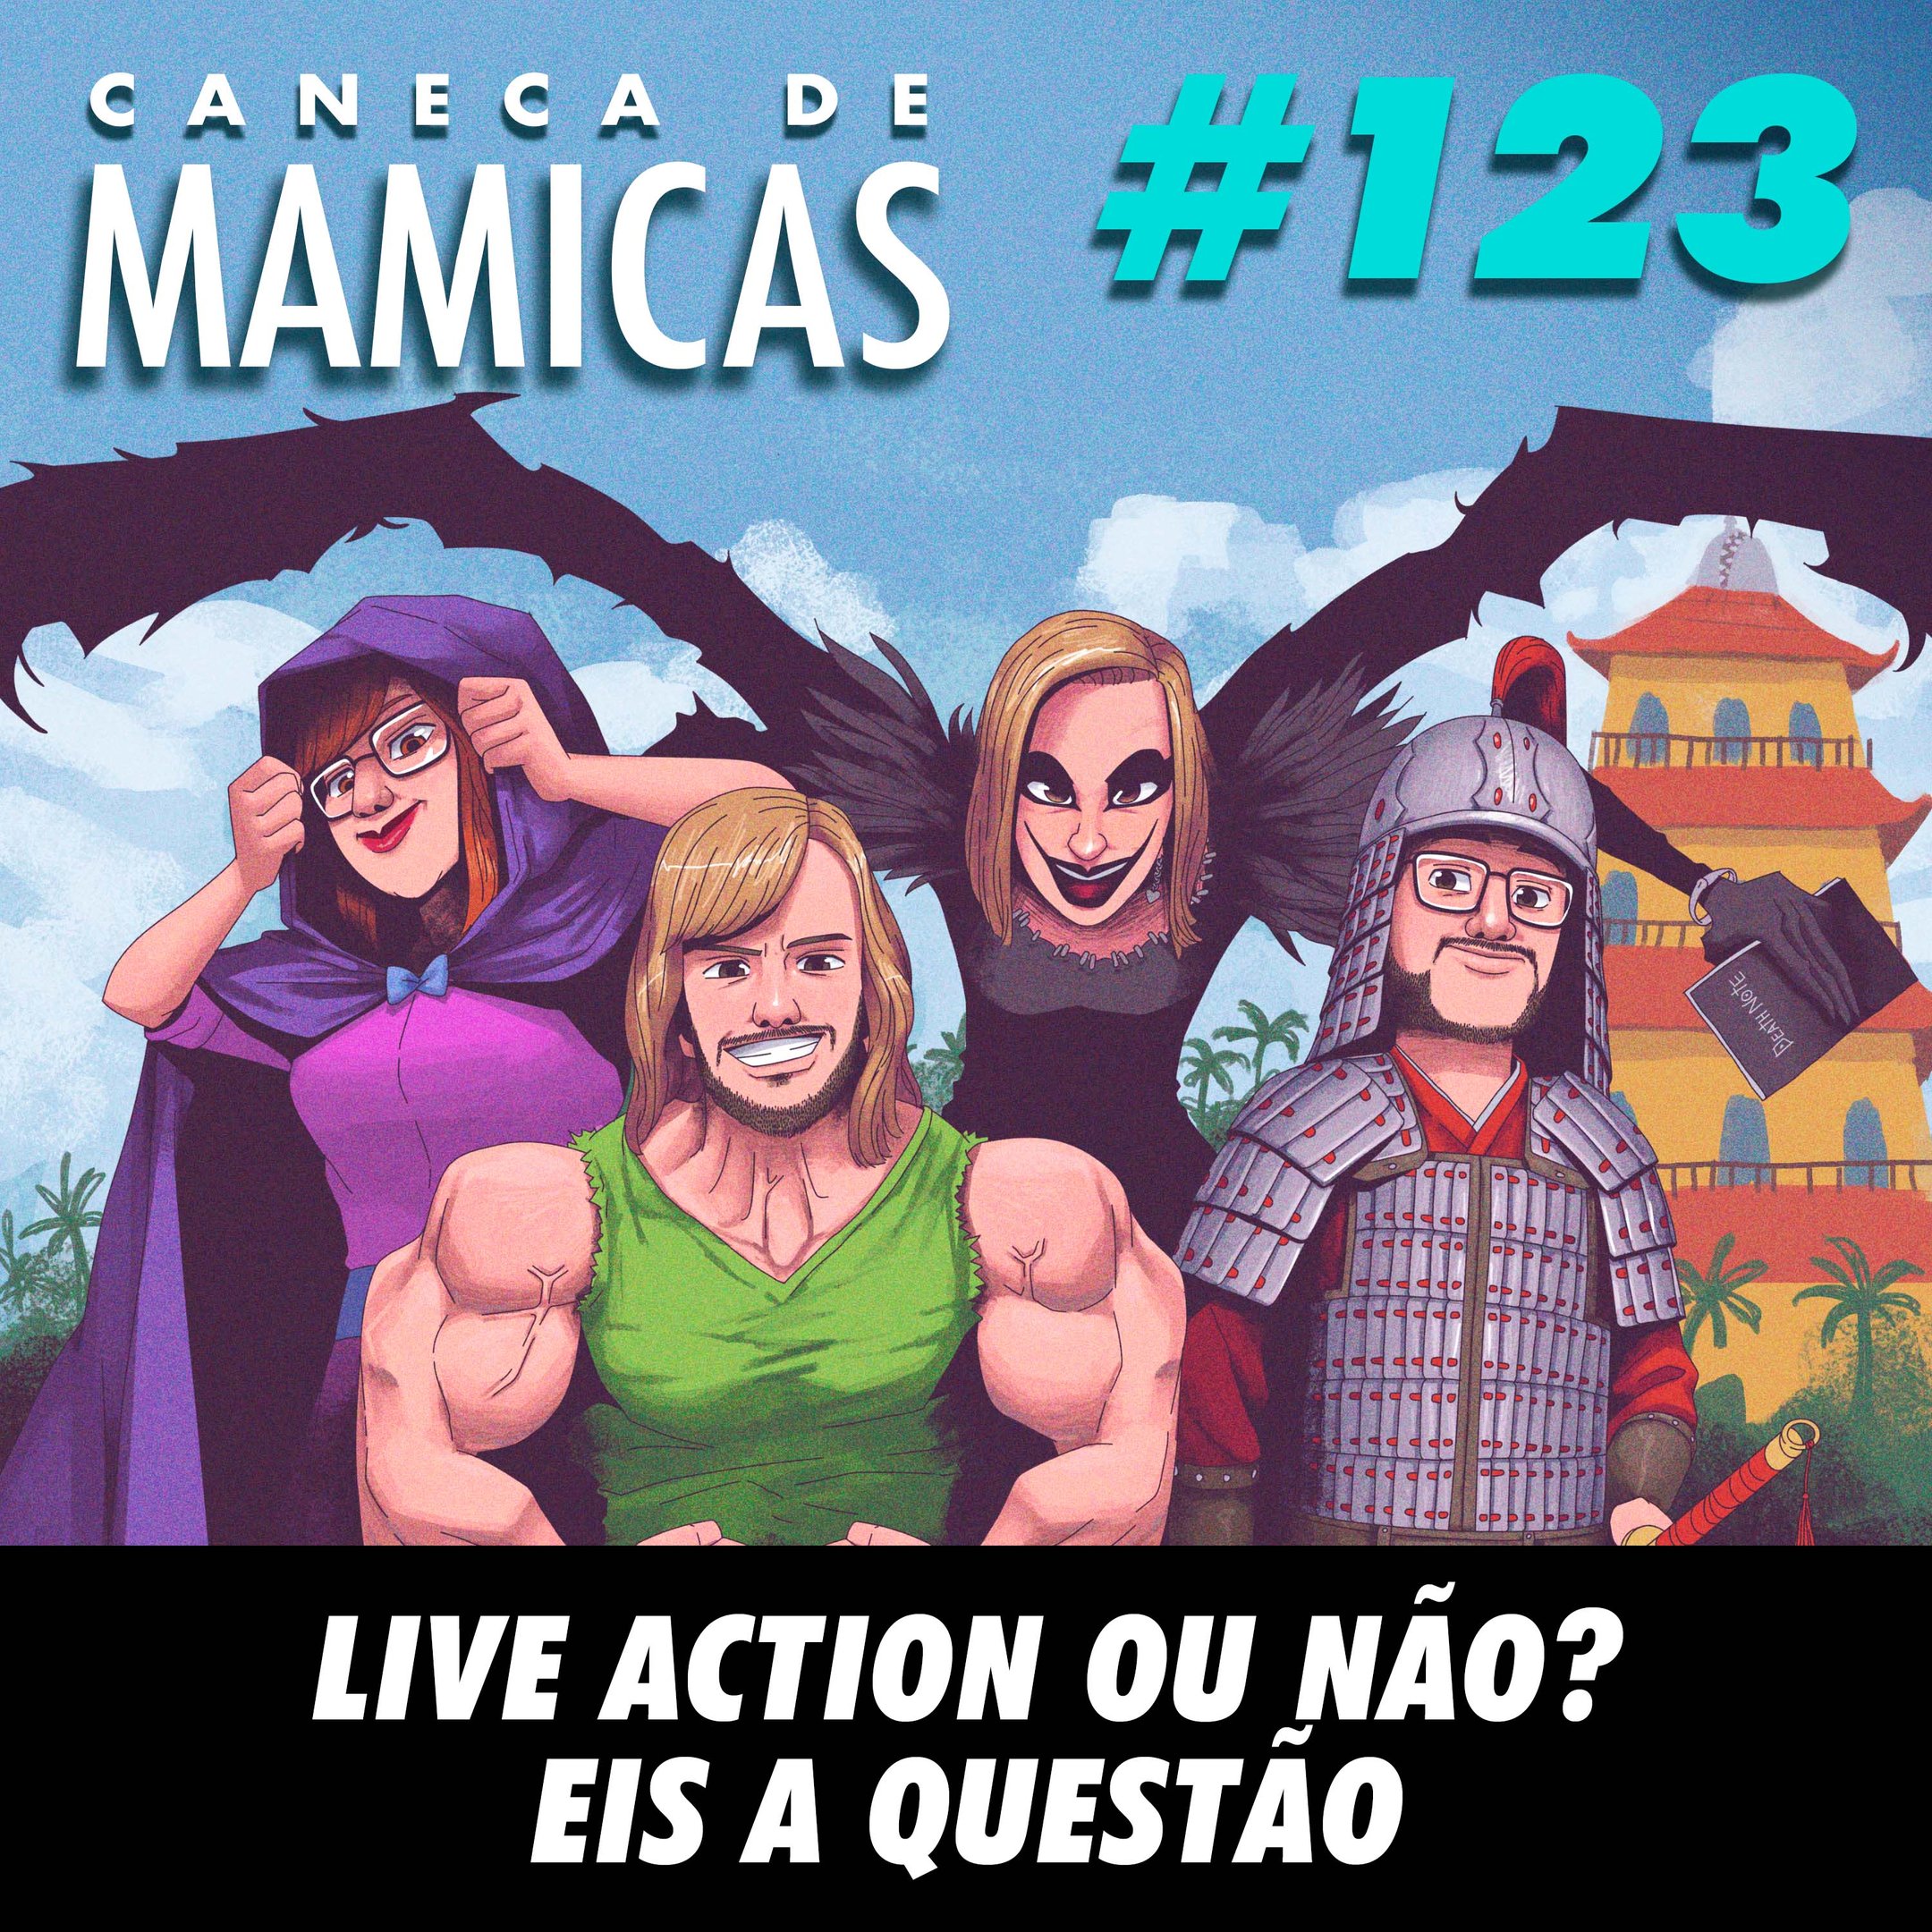 Caneca de Mamicas 123 - Live Action ou não? Eis a questão